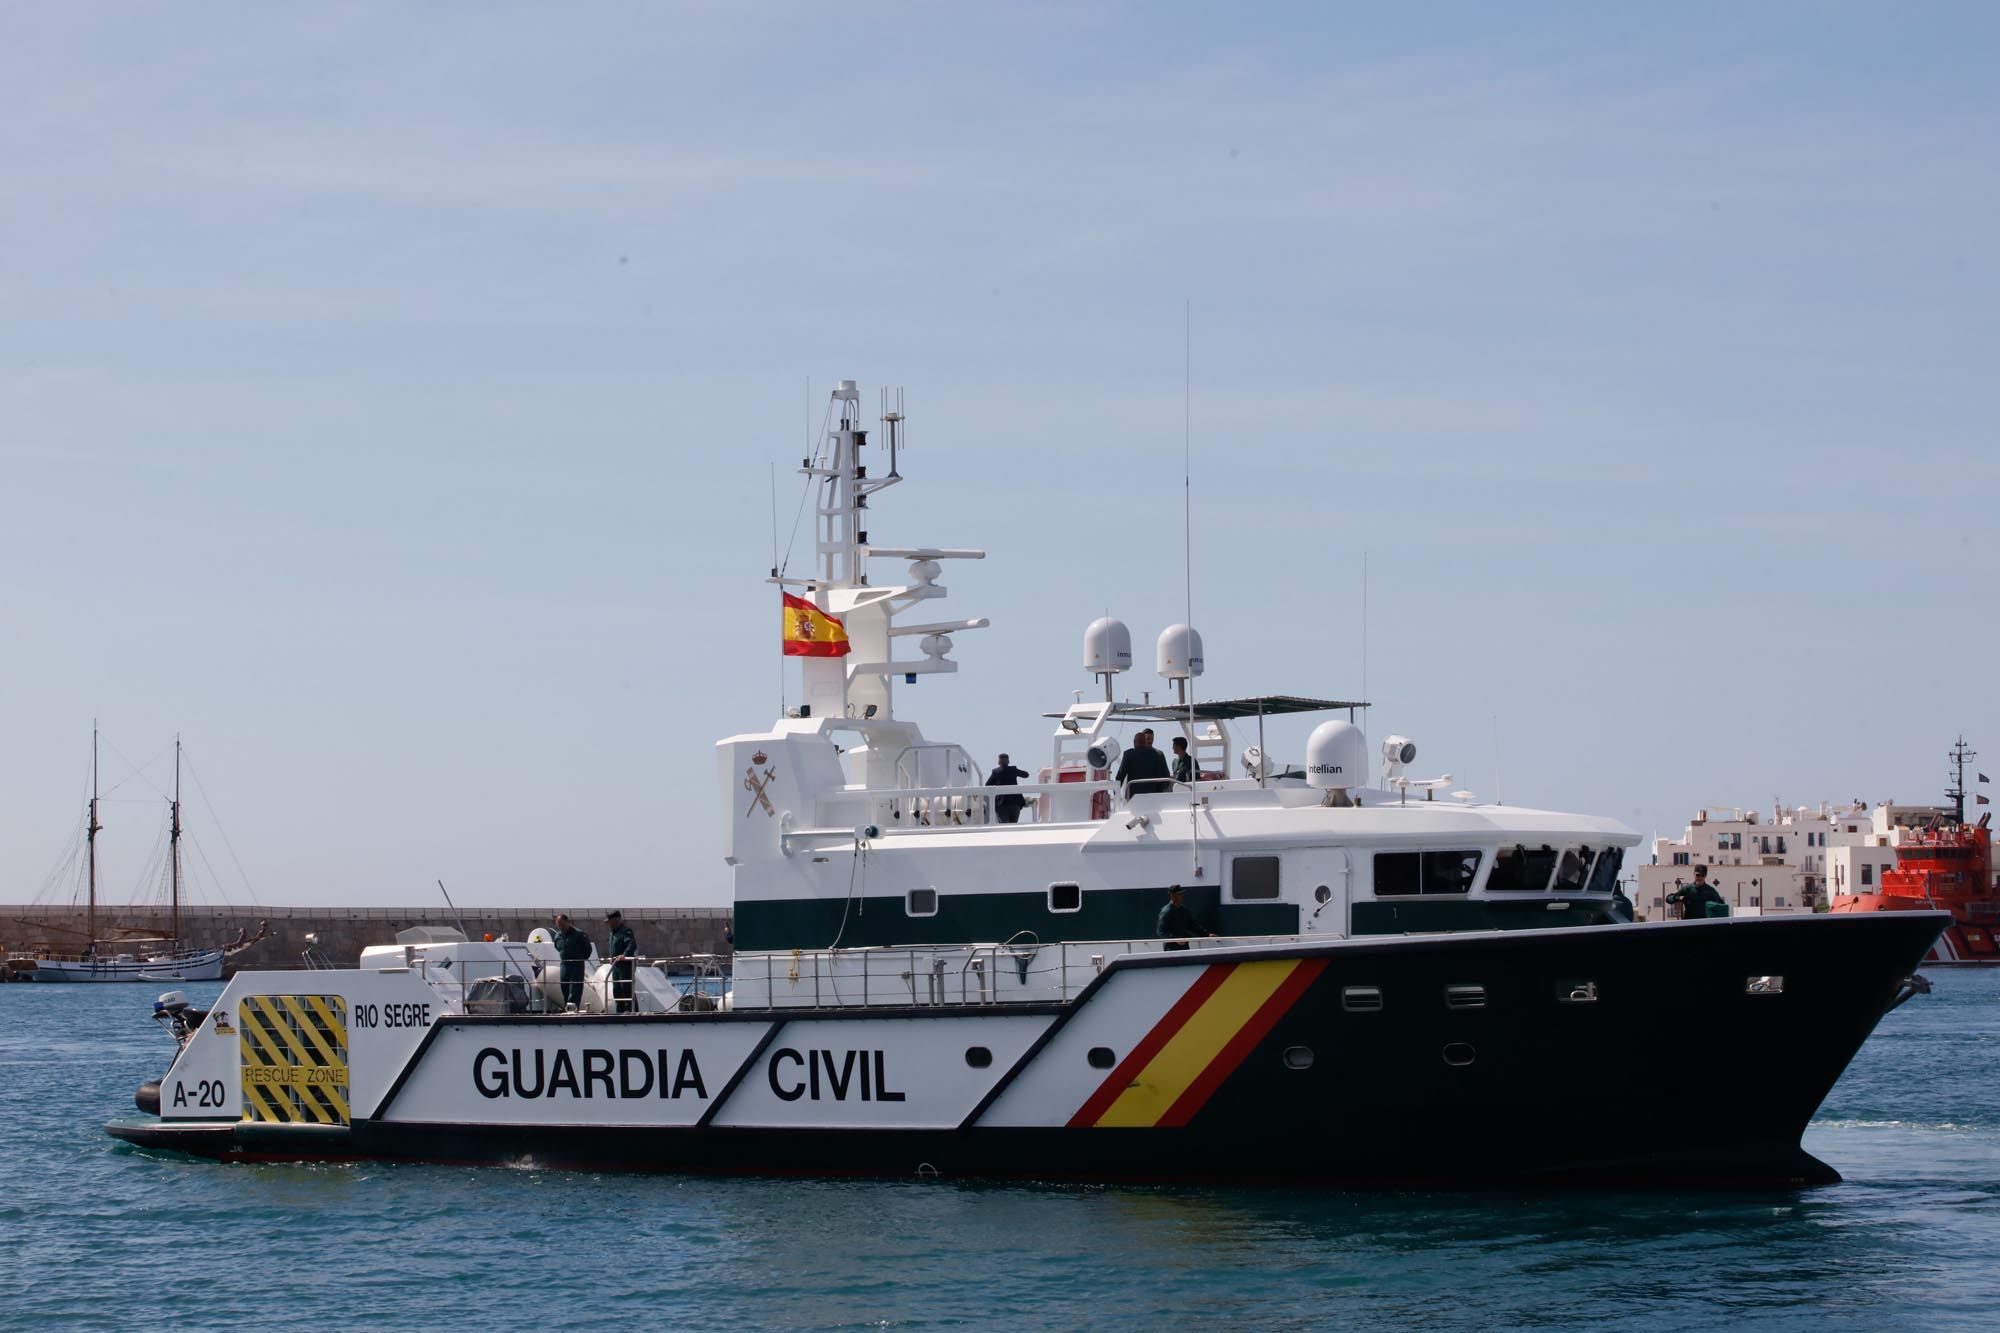 Galería de imágenes del ministro de Interior, Fernando Grande-Marlaska, durante su visita a Ibiza